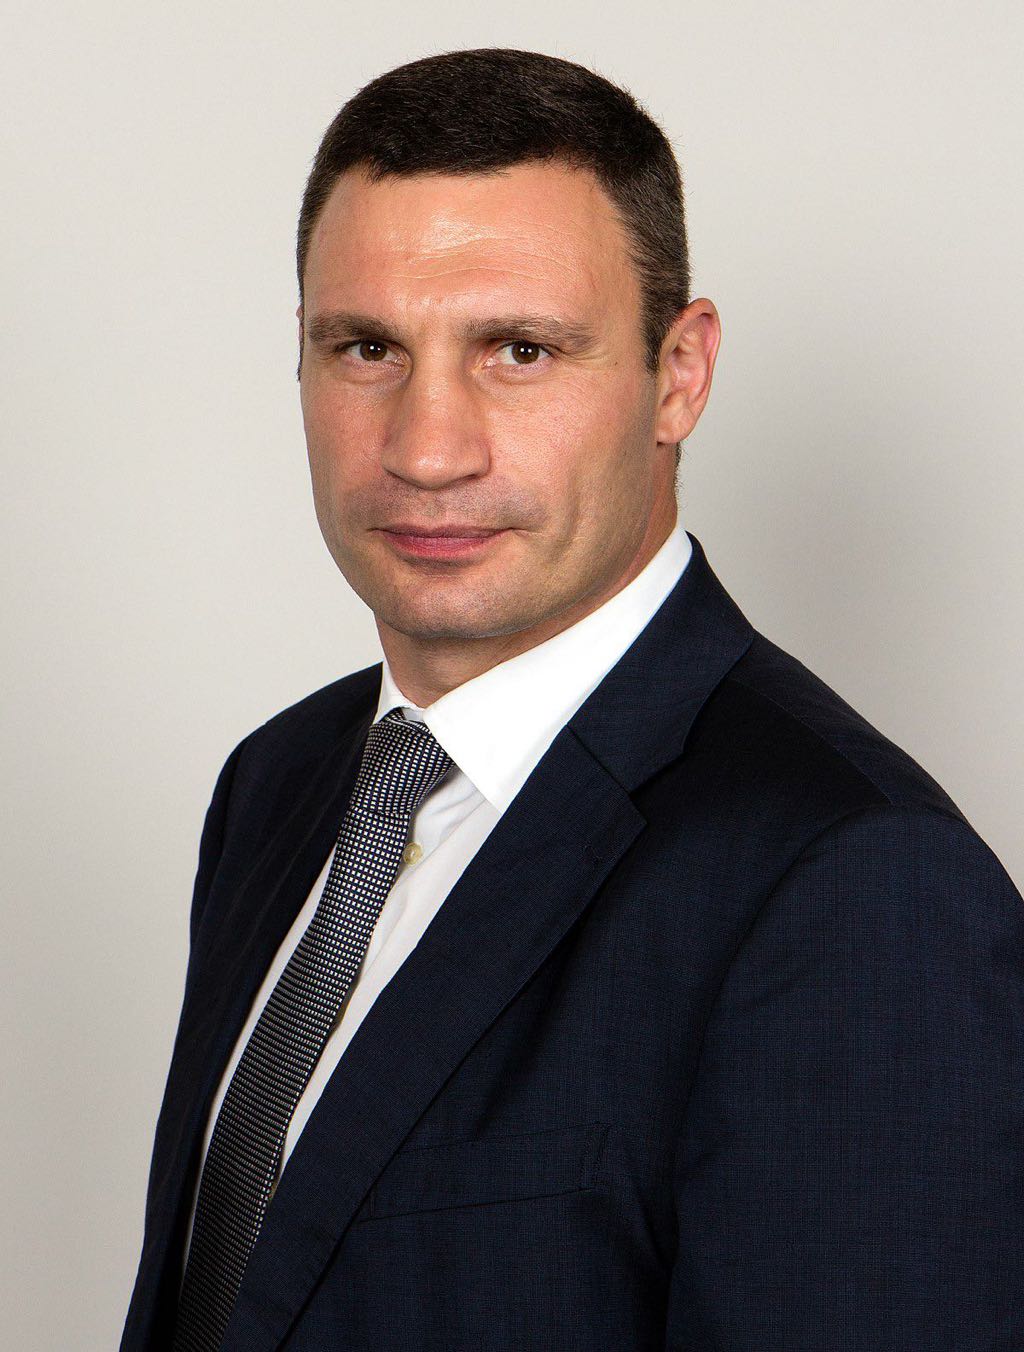 Vitali Klitschko Wikimedia